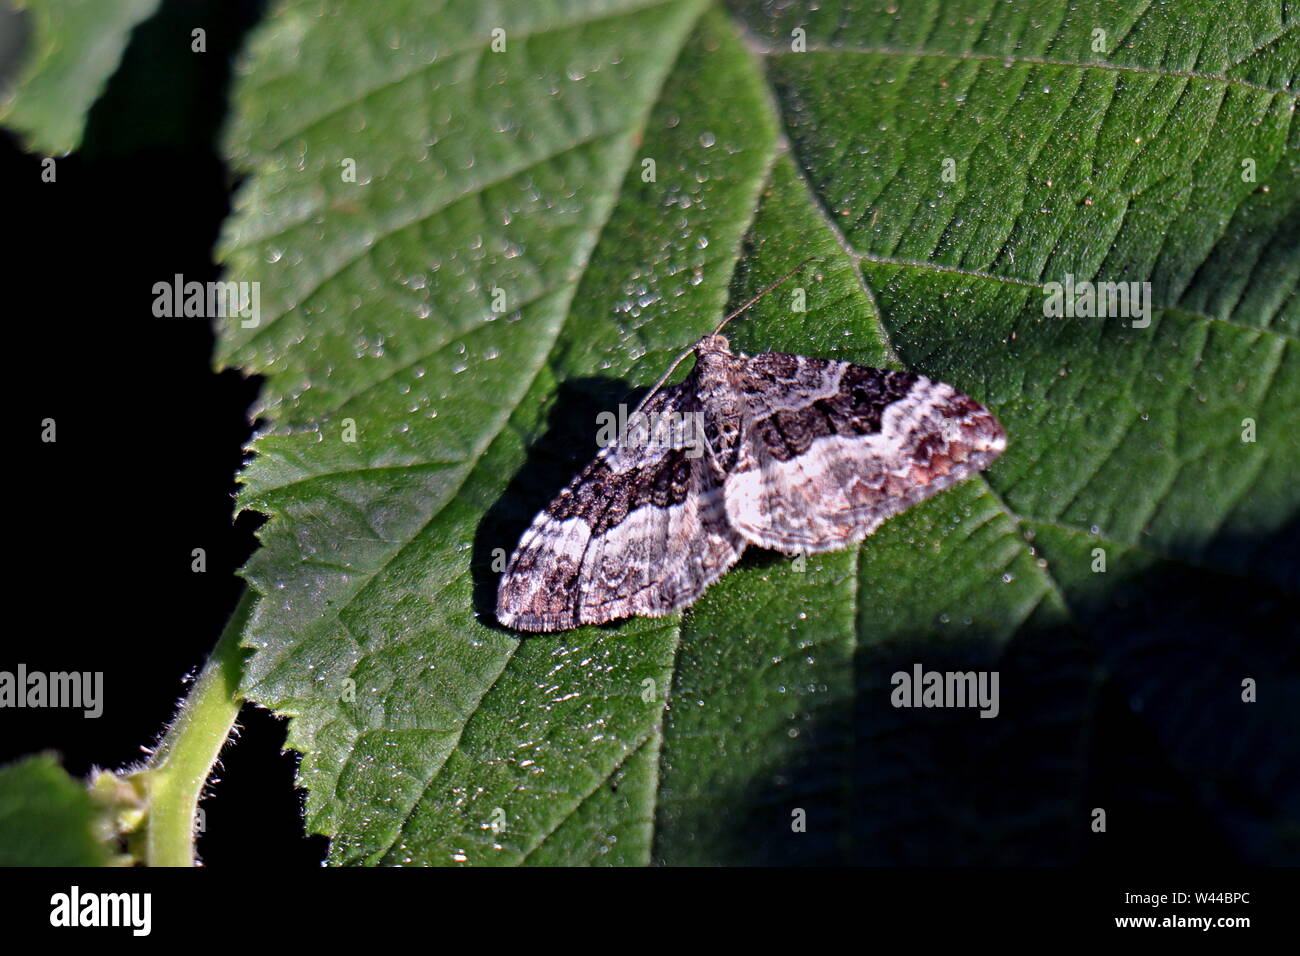 Teppich Moth, Epirrhoe galiata, die galium Teppich, ist ein Schmetterling aus der Familie der Spanner (Geometridae). Ivybriidge, Devon, England. Stockfoto